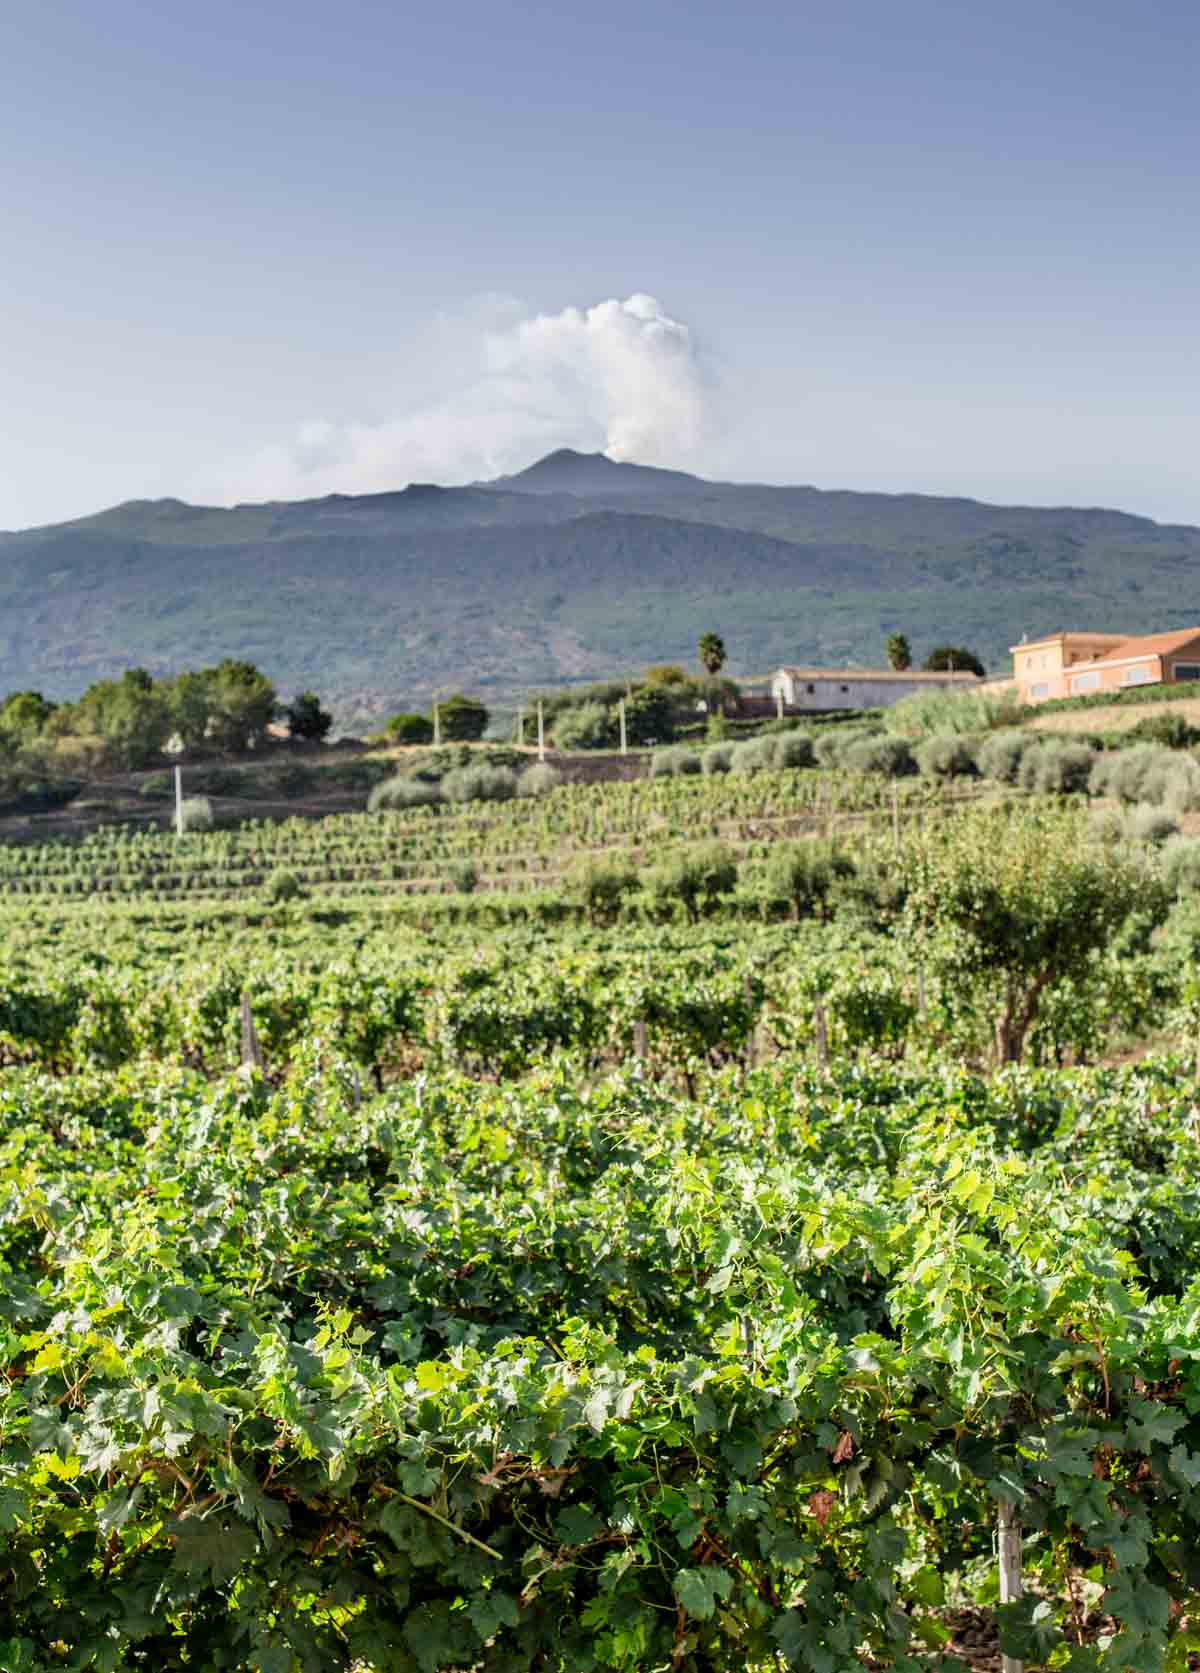 A vineyard in Etna DOC region, overlooking Mount Etna volcano in Sicily, Italy